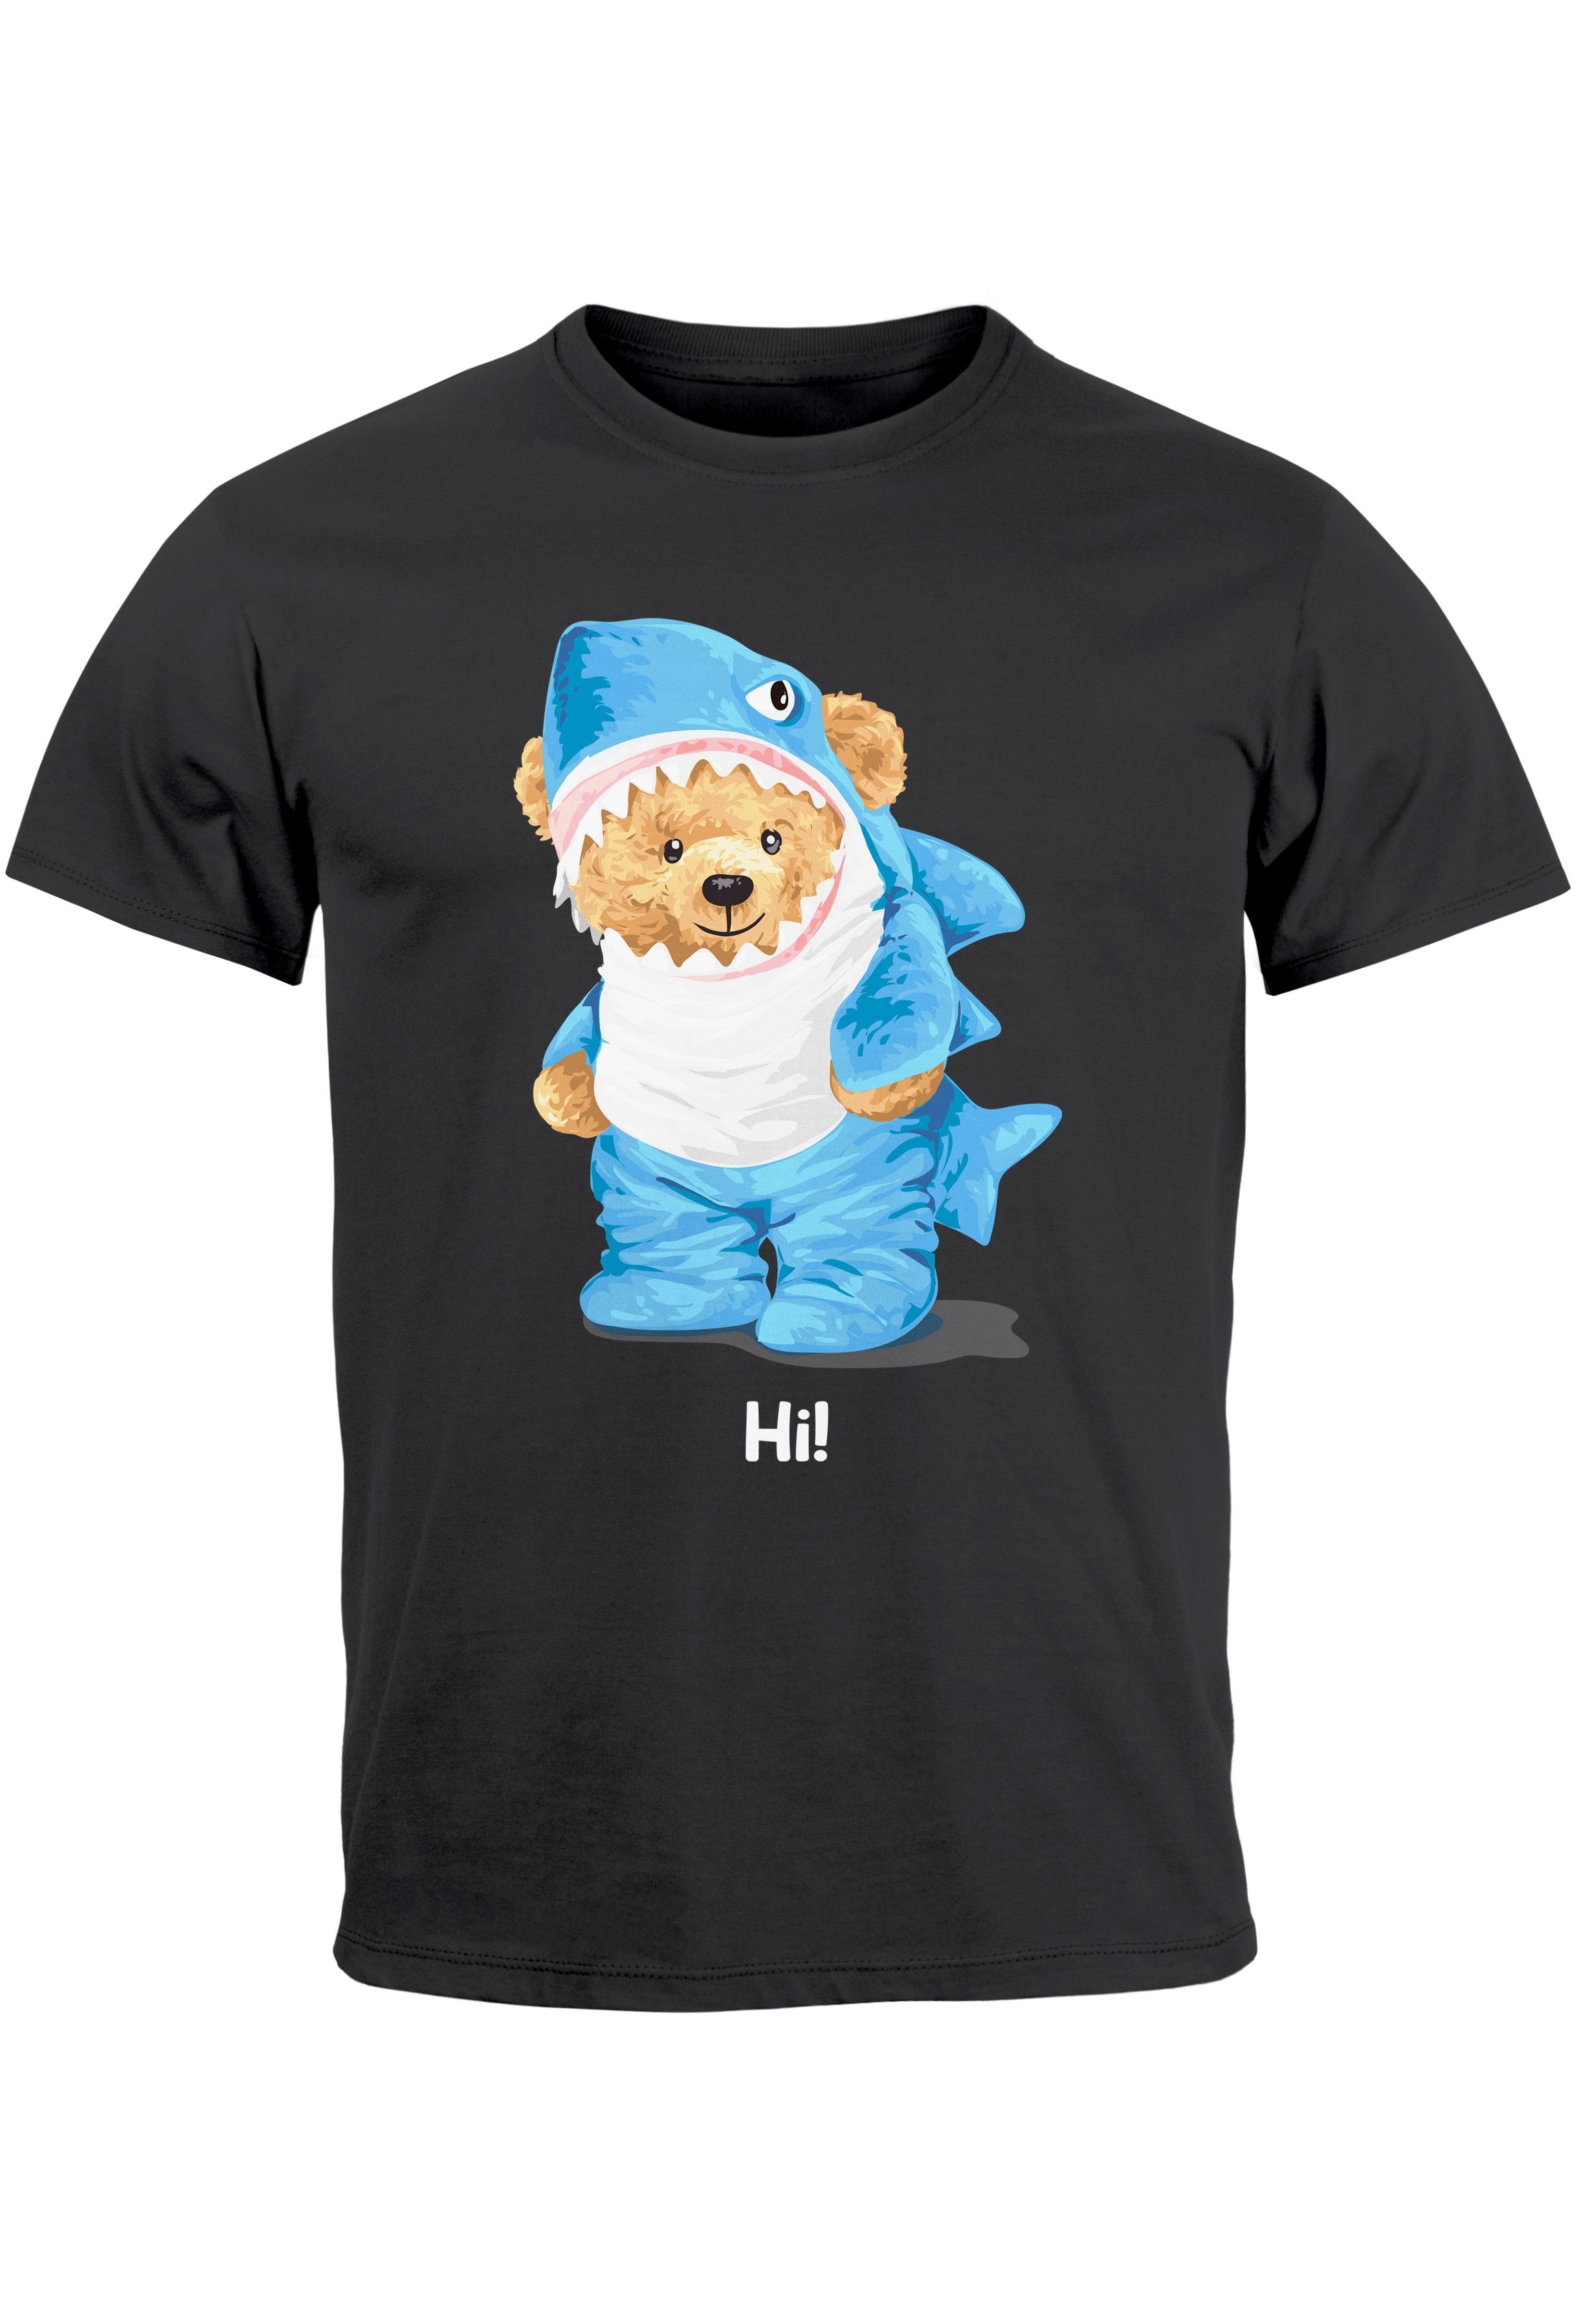 Neverless Print-Shirt Herren T-Shirt Hai Hi Teddy Bär Witz Parodie Printshirt Aufdruck Fashi mit Print anthrazit